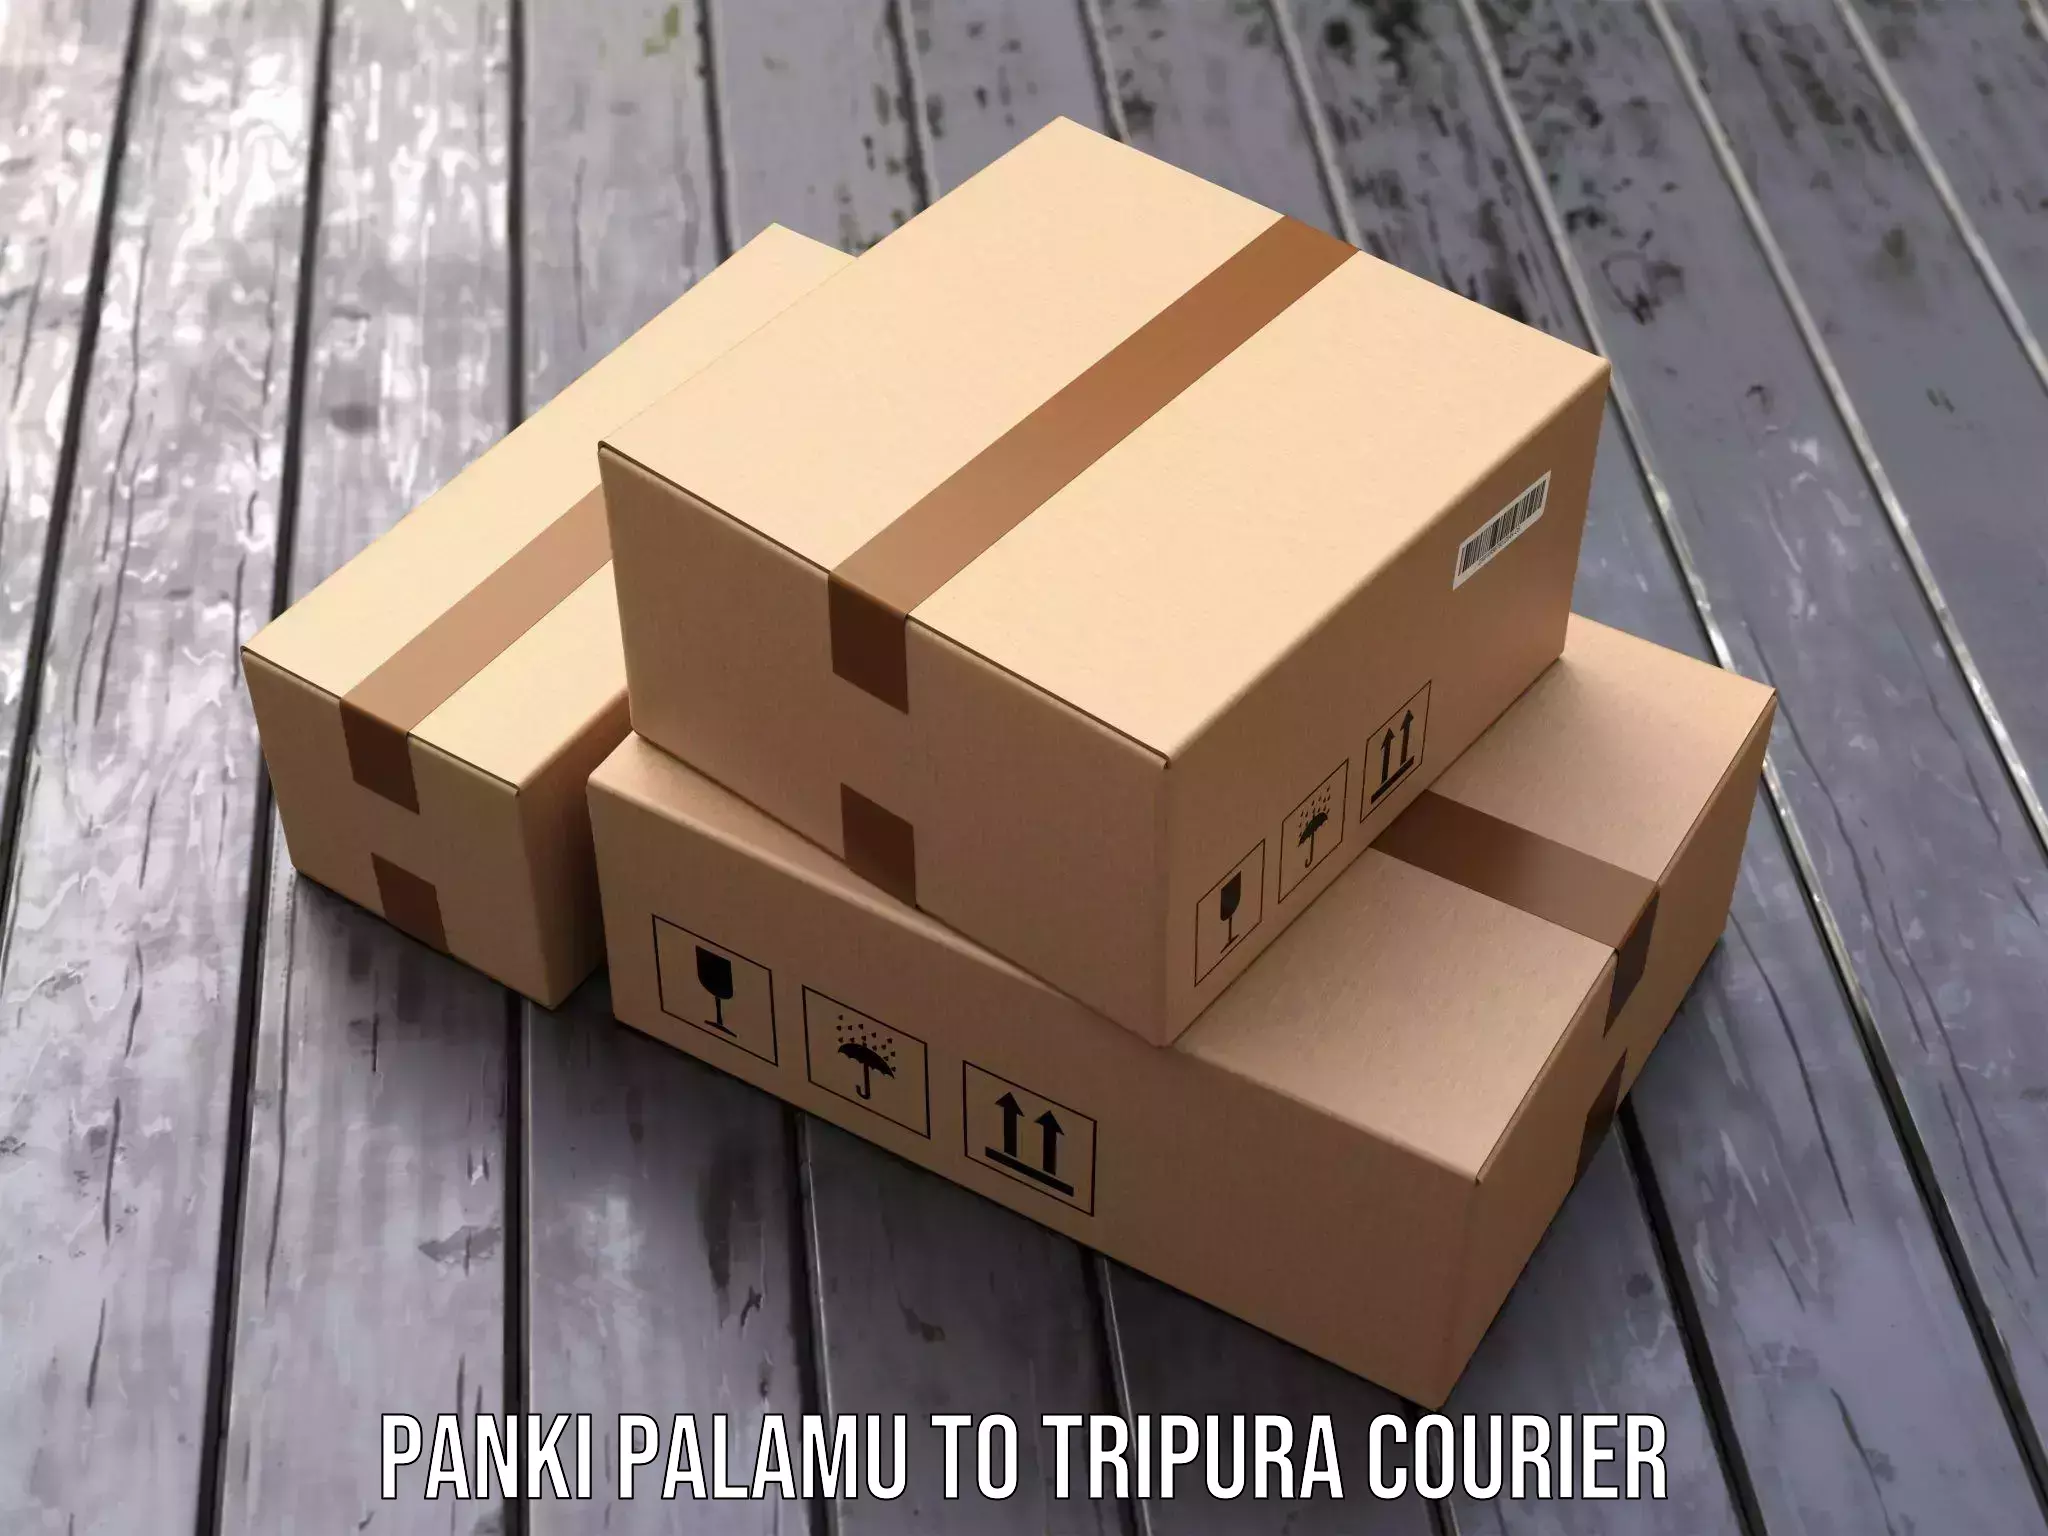 Multi-city courier Panki Palamu to Udaipur Tripura